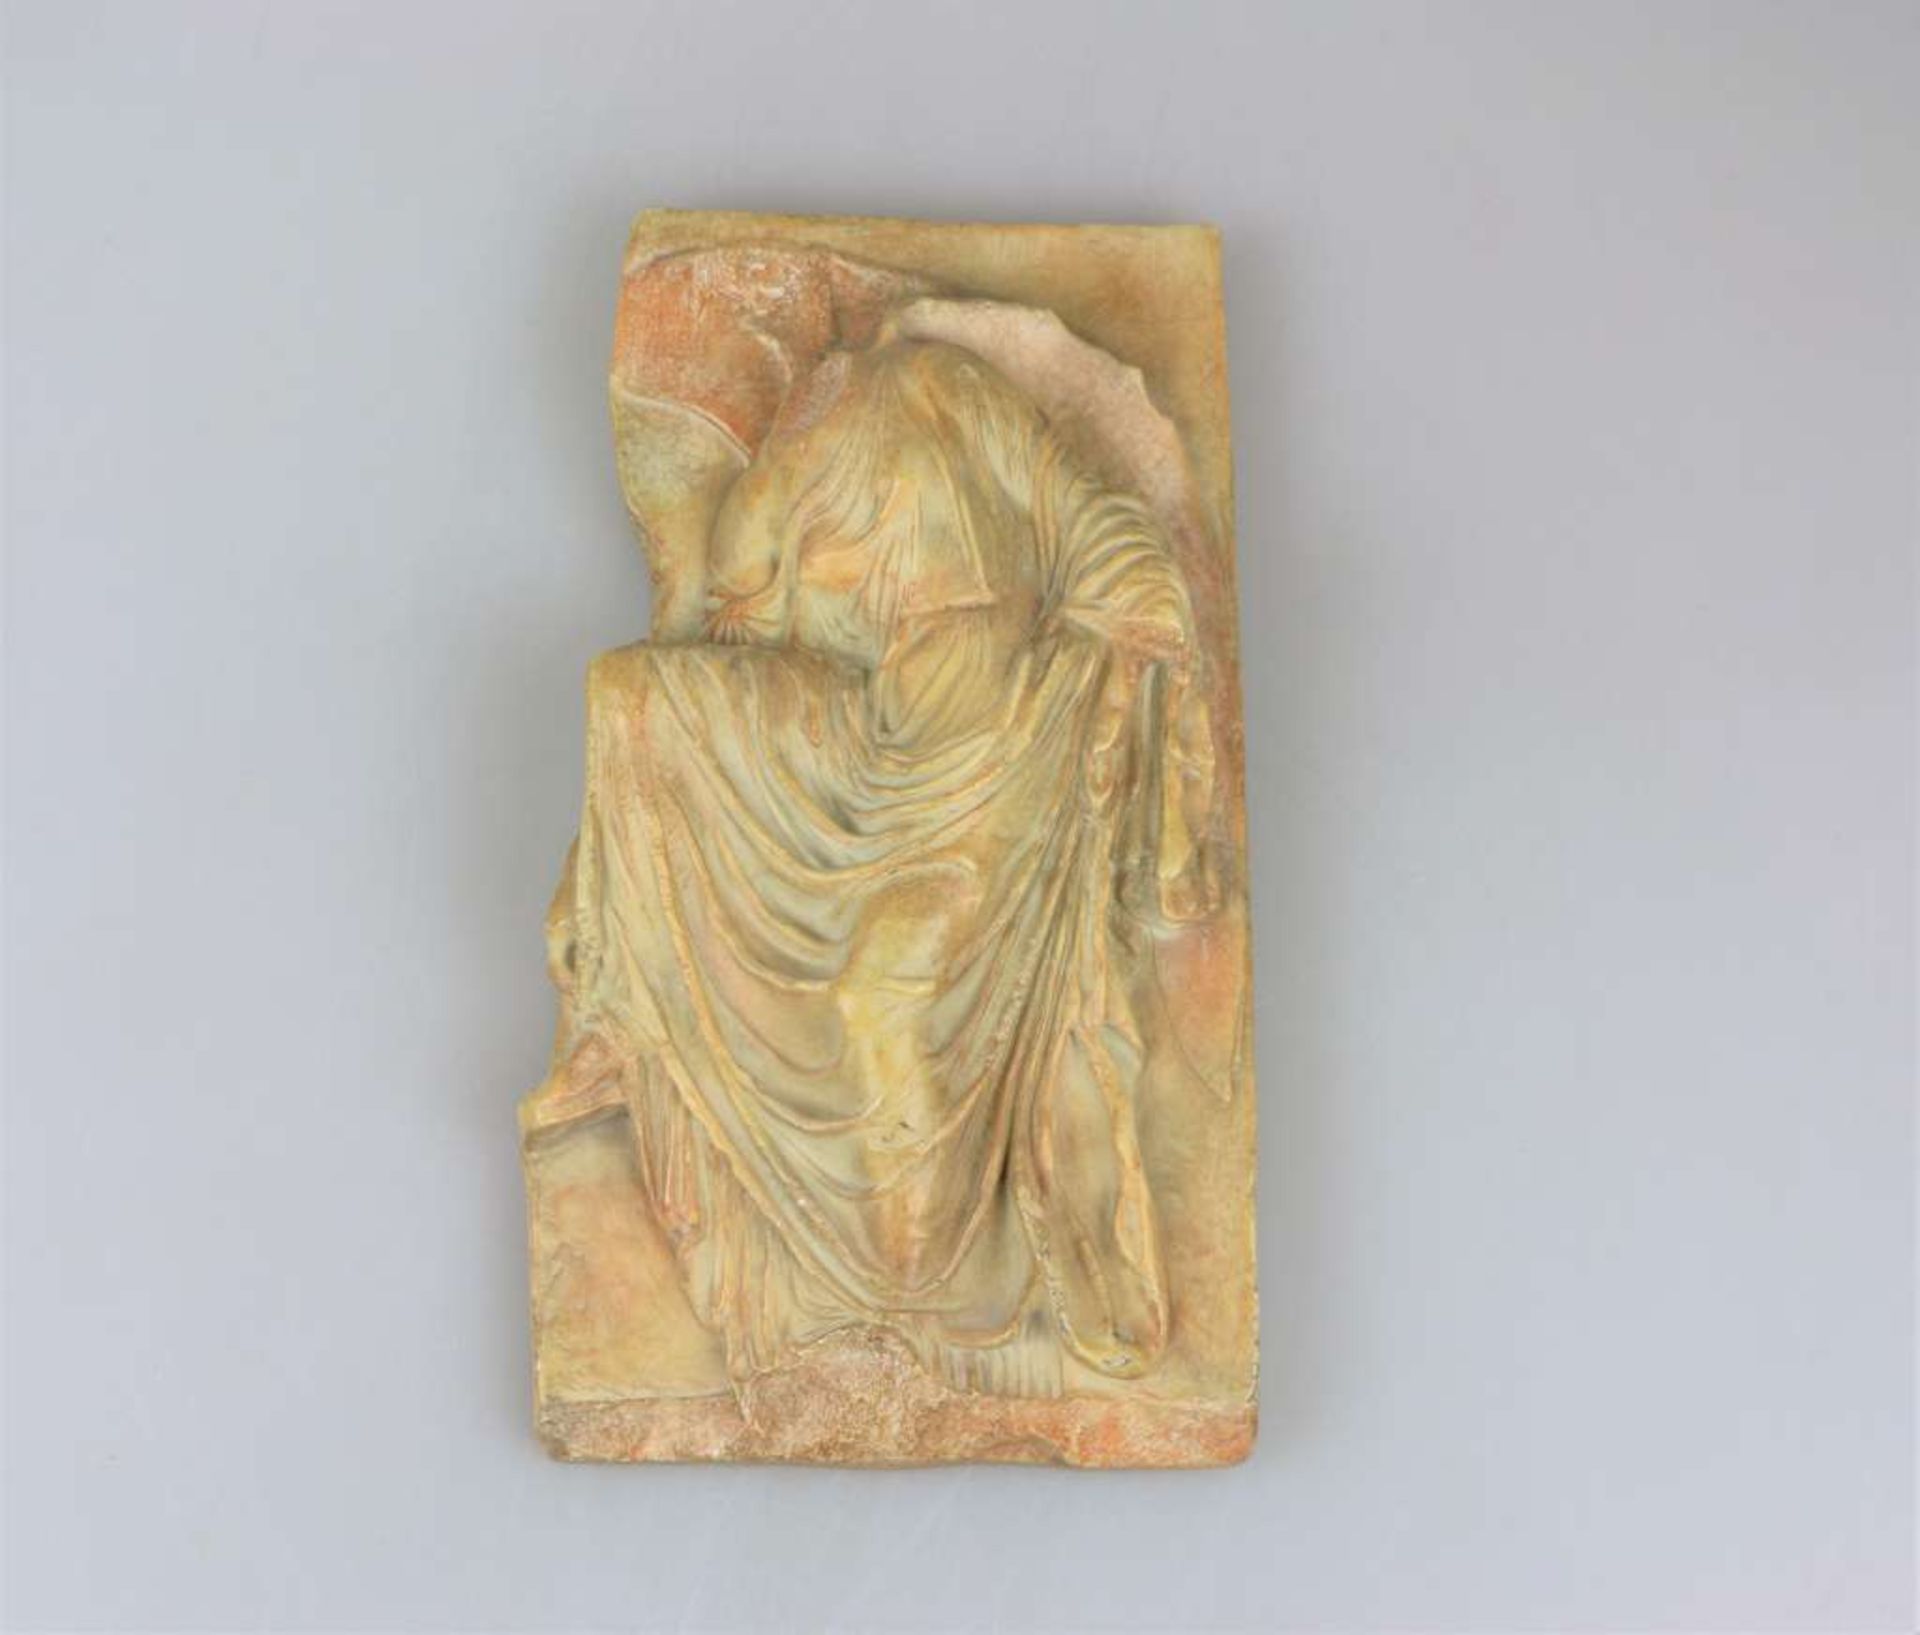 Nike-Relief von der Akropolis, Kunstguss. Diese graziöse Siegesgöttin vom Eingang zum kleinen